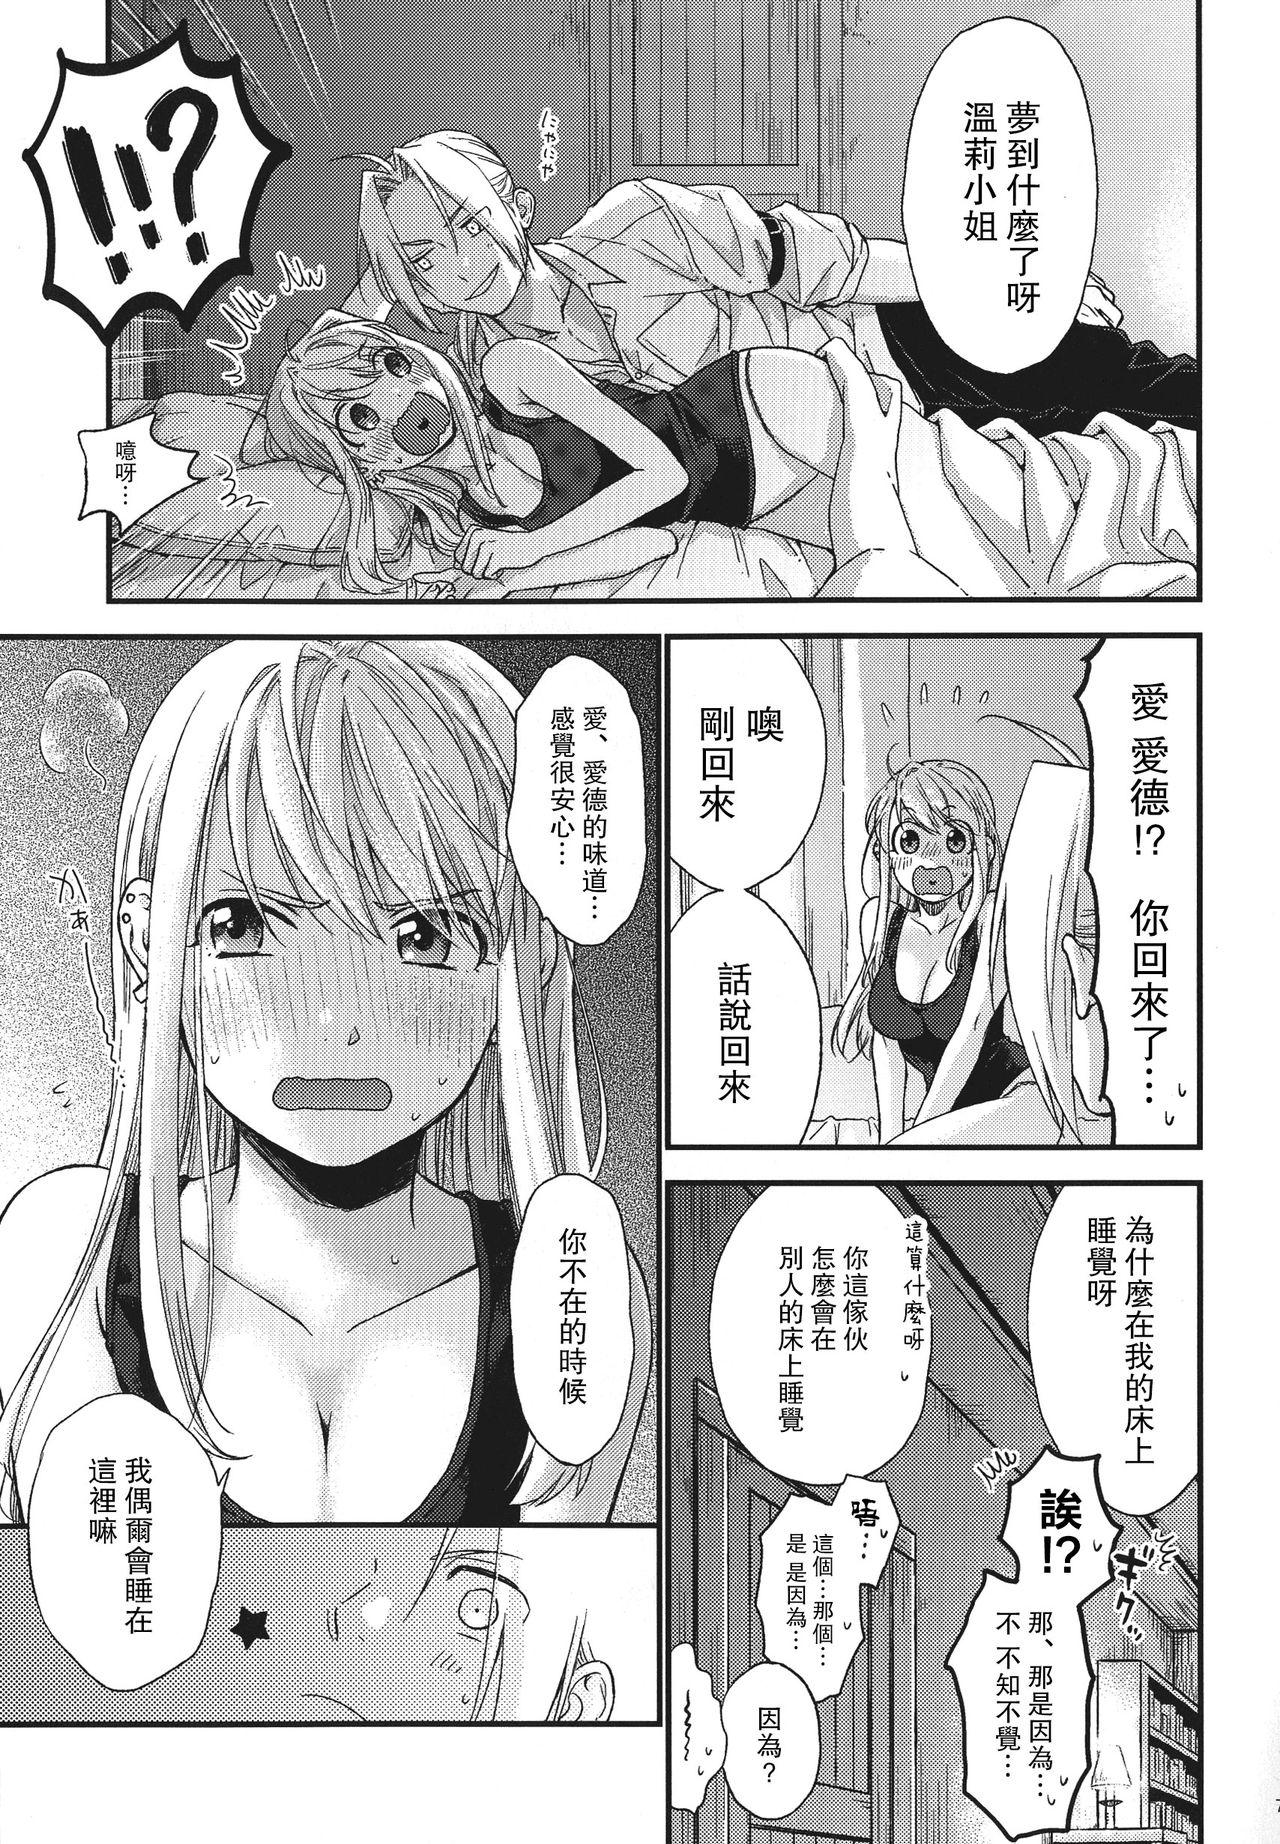 Mojada Yoyuu ga nai no wa - Fullmetal alchemist | hagane no renkinjutsushi Bottom - Page 8